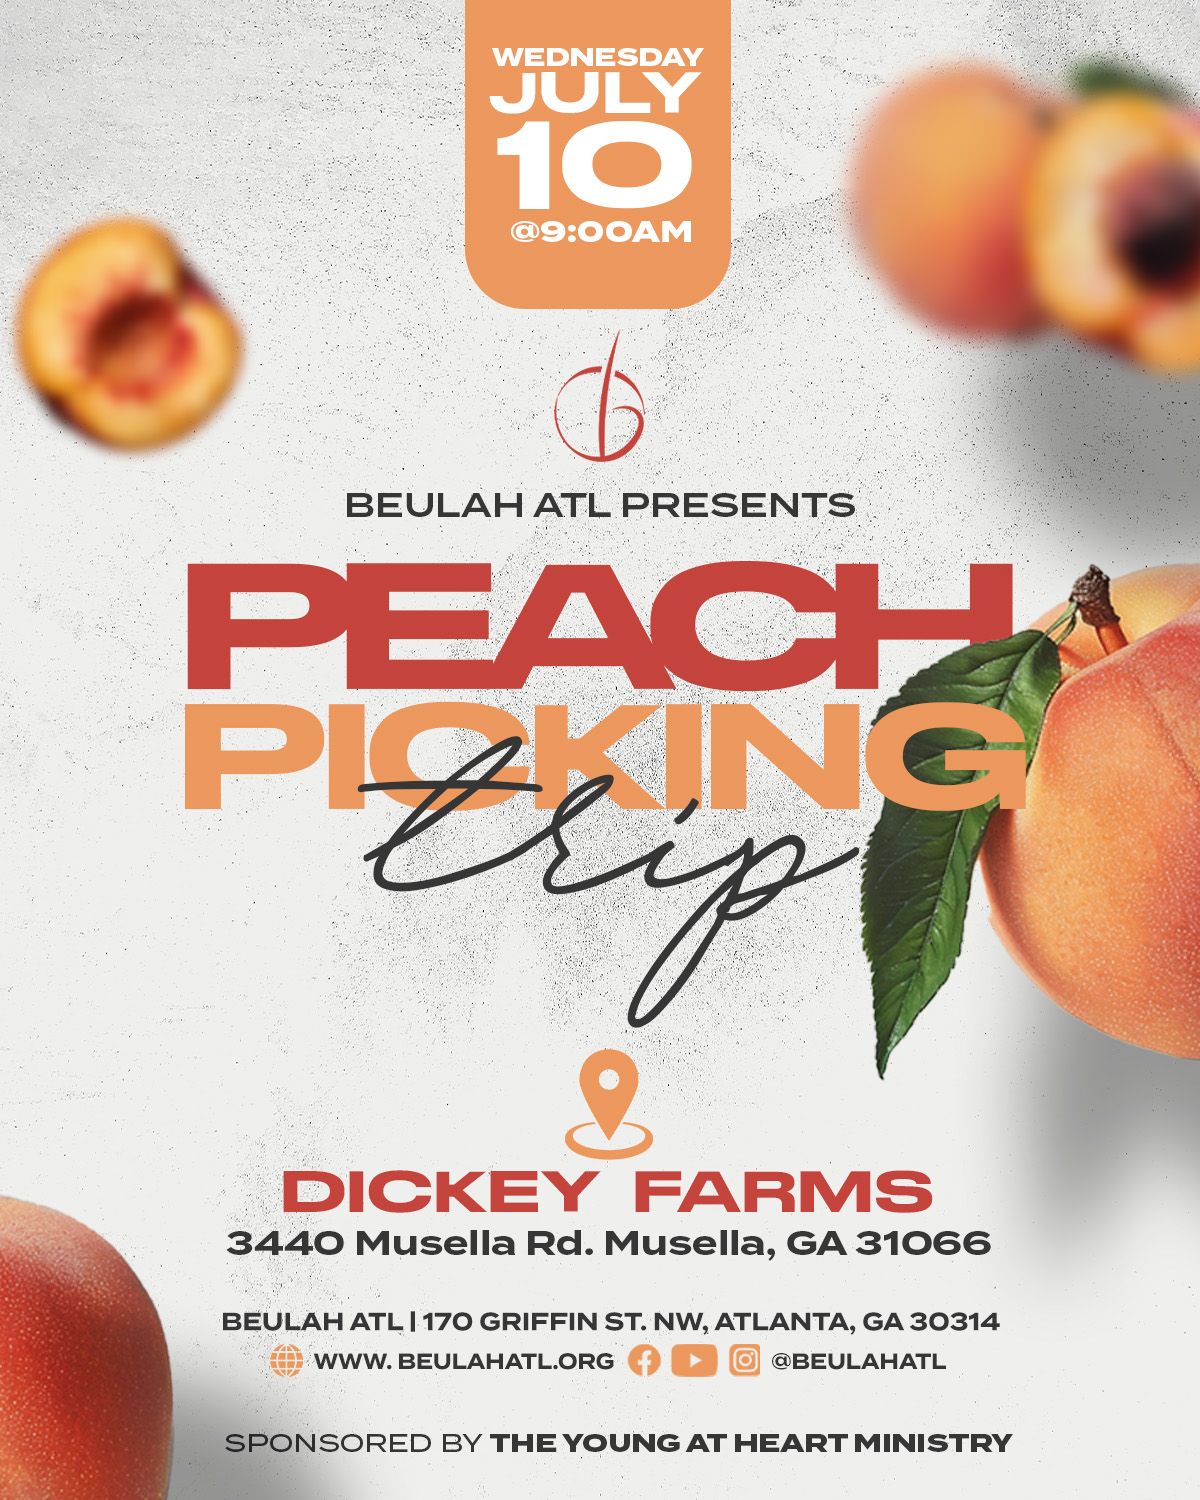 Peach Picking Trip